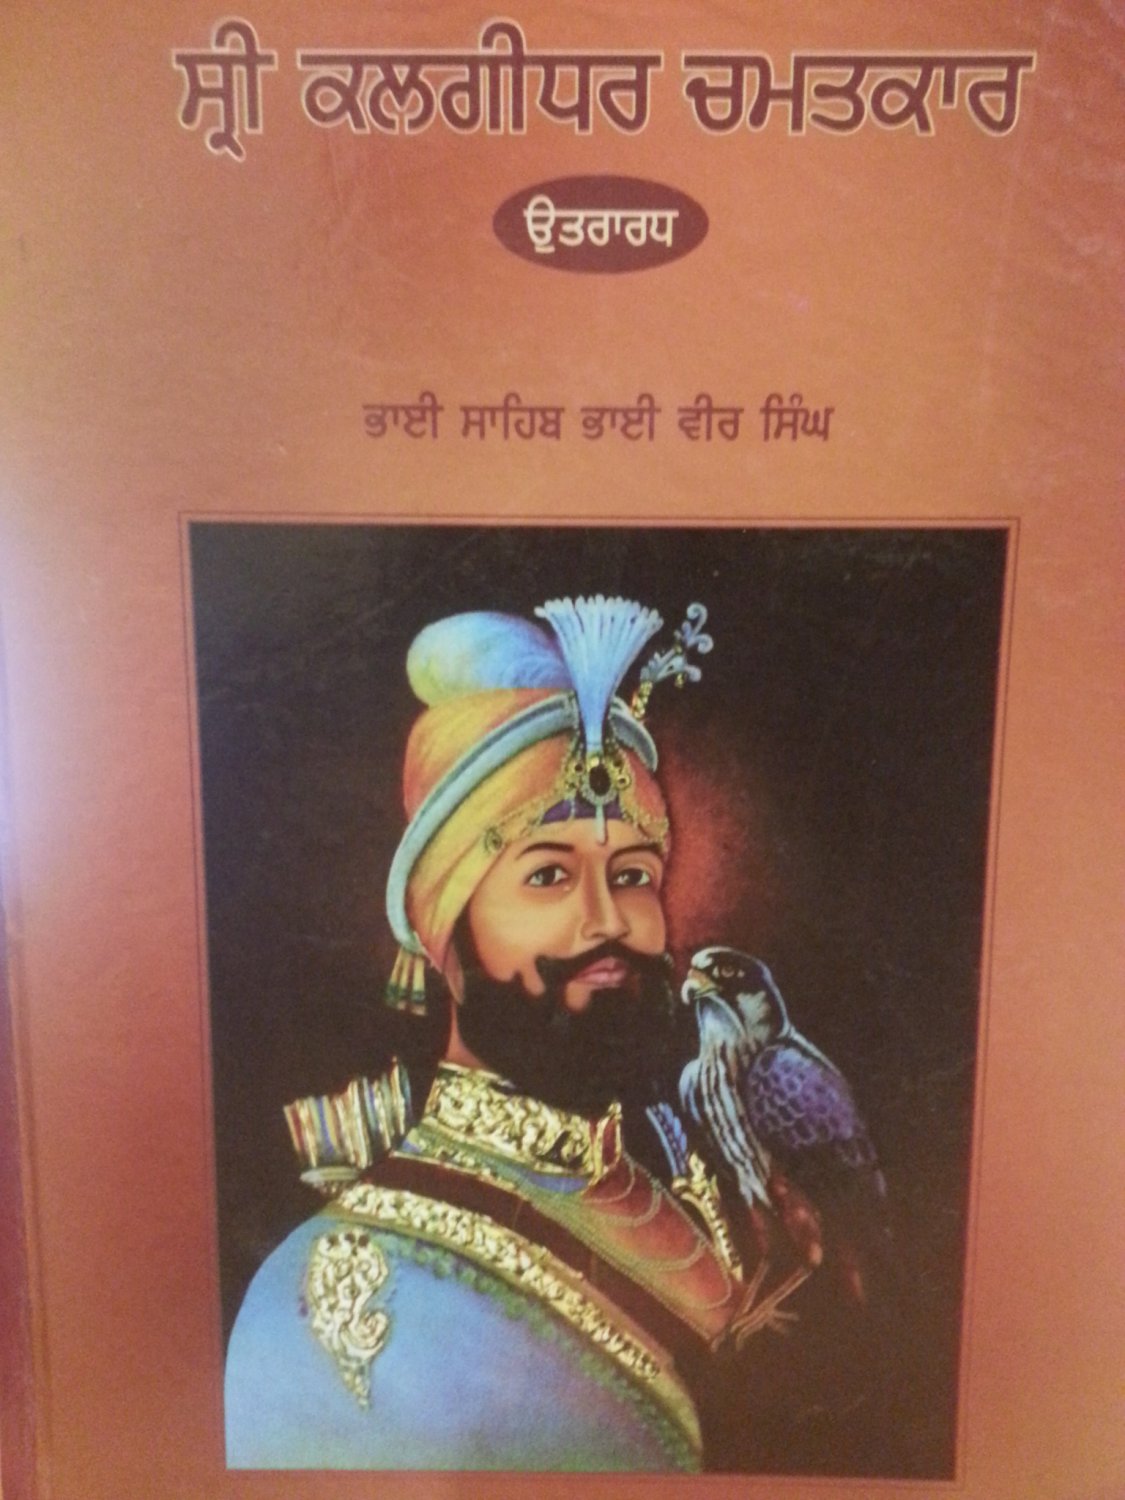 Sri Kalgidhar Chamatkar (Vol. 2) - Bhai Sahib Bhai Vir Singh Ji (Punjabi)